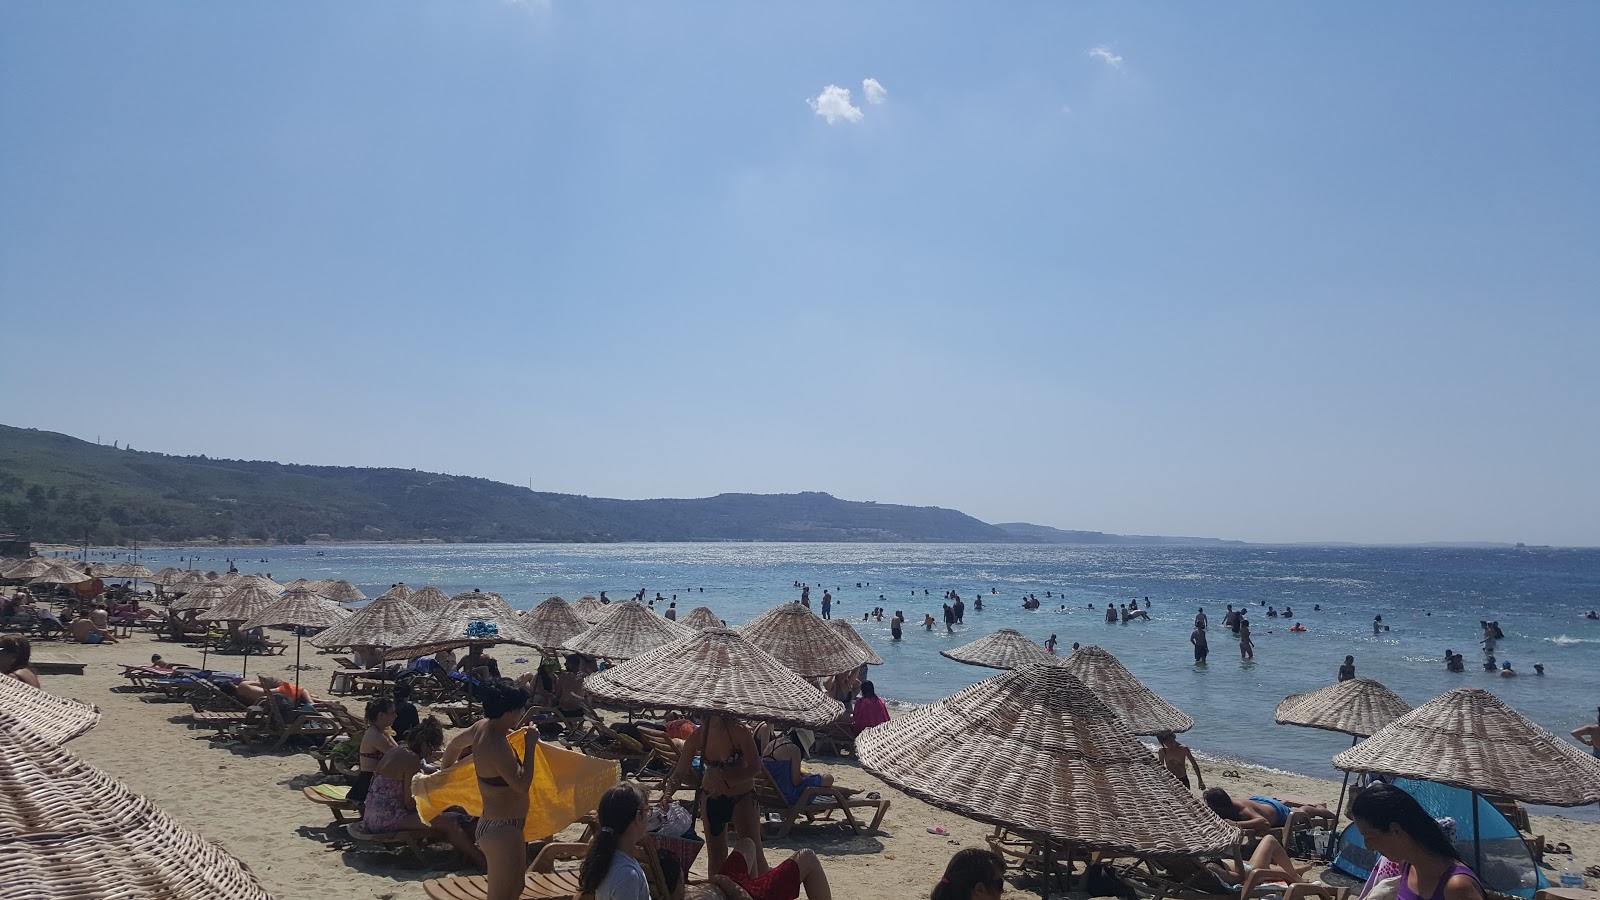 Çanakkale halk Plajı II'in fotoğrafı geniş plaj ile birlikte